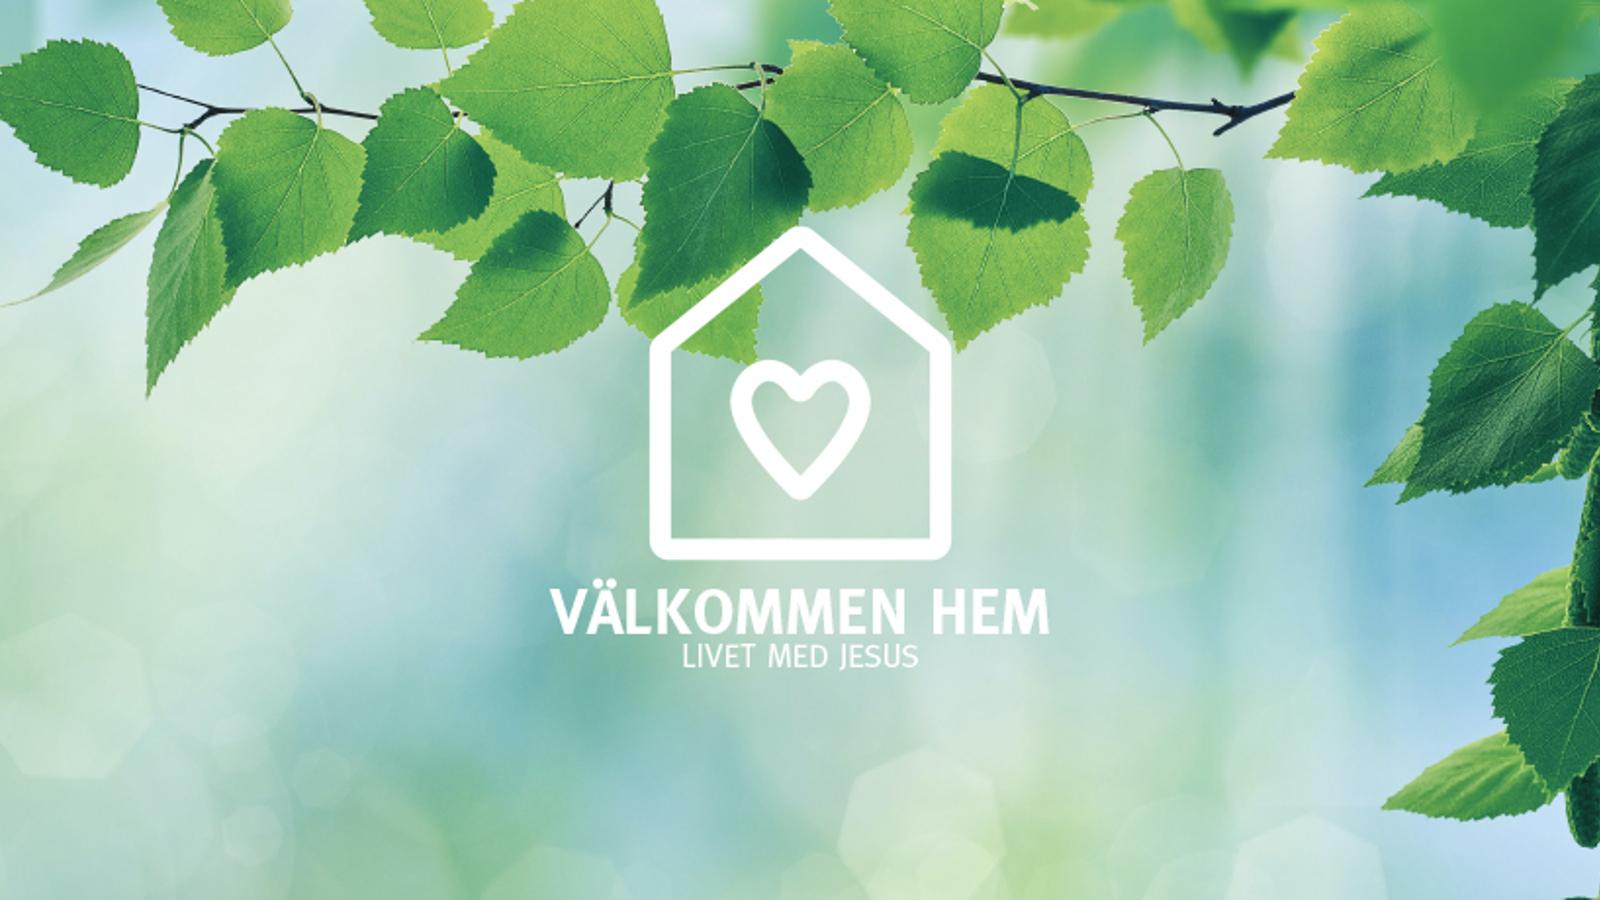 En logotyp i form av ett hus med ett hjärta på, med texten "Välkommen hem. Livet med Jesus". I bakgrunden hänger det ned en trädgren.